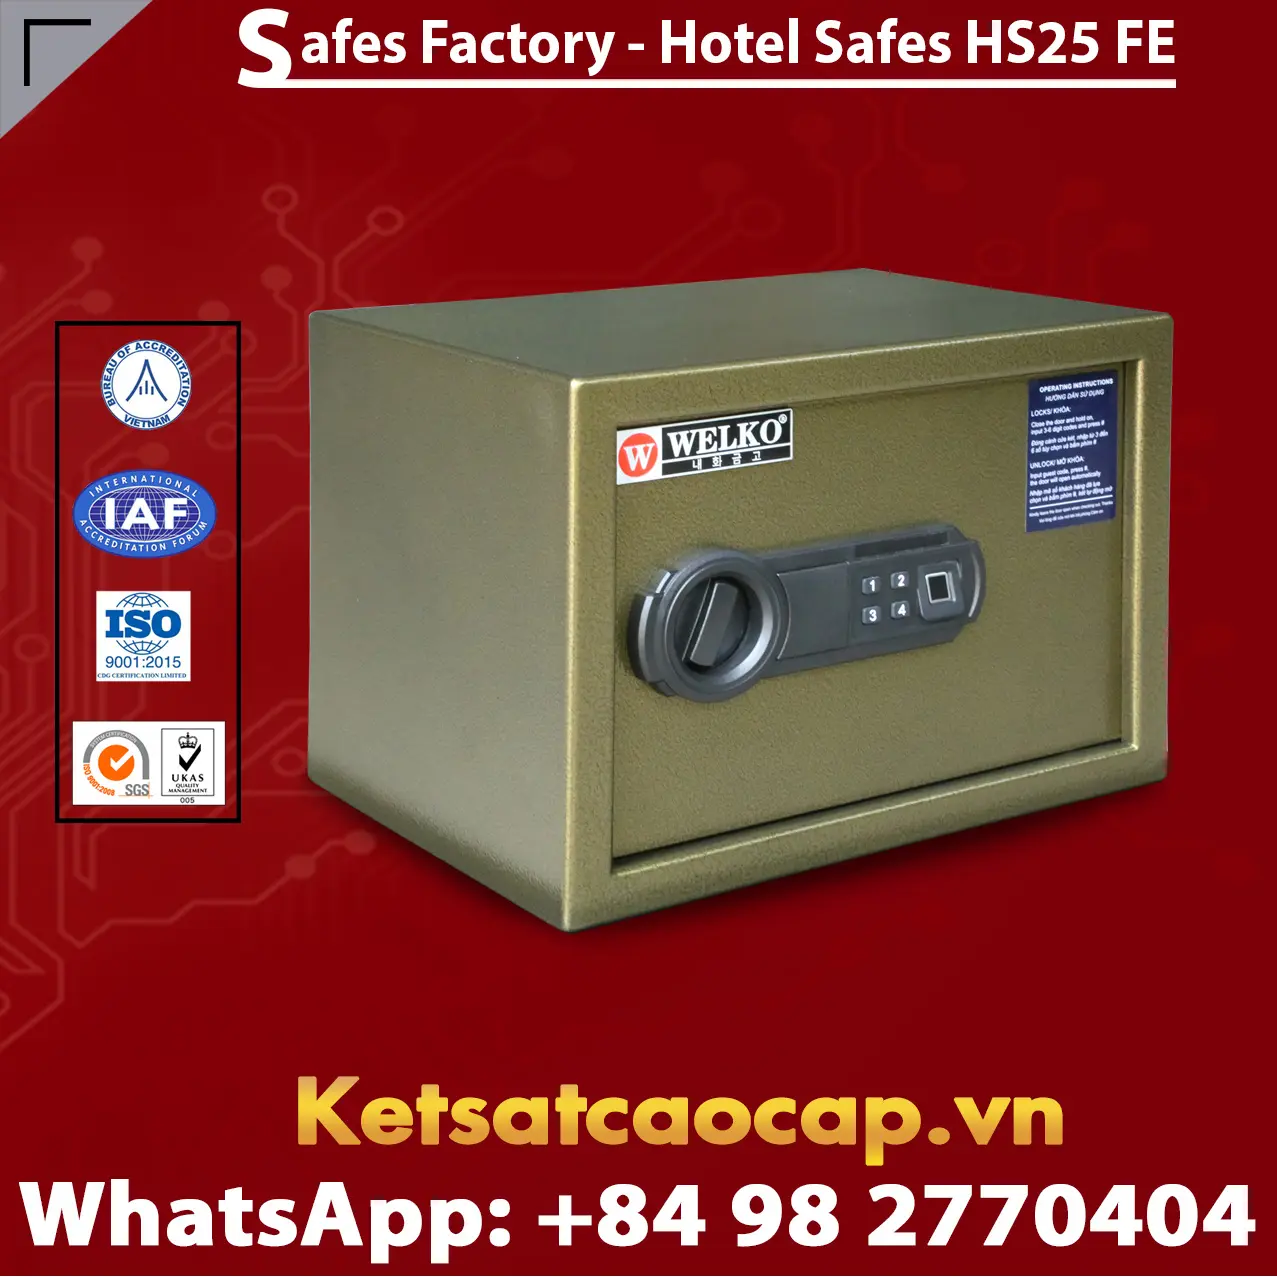 Safes In Hotel WELKO HS25 FE